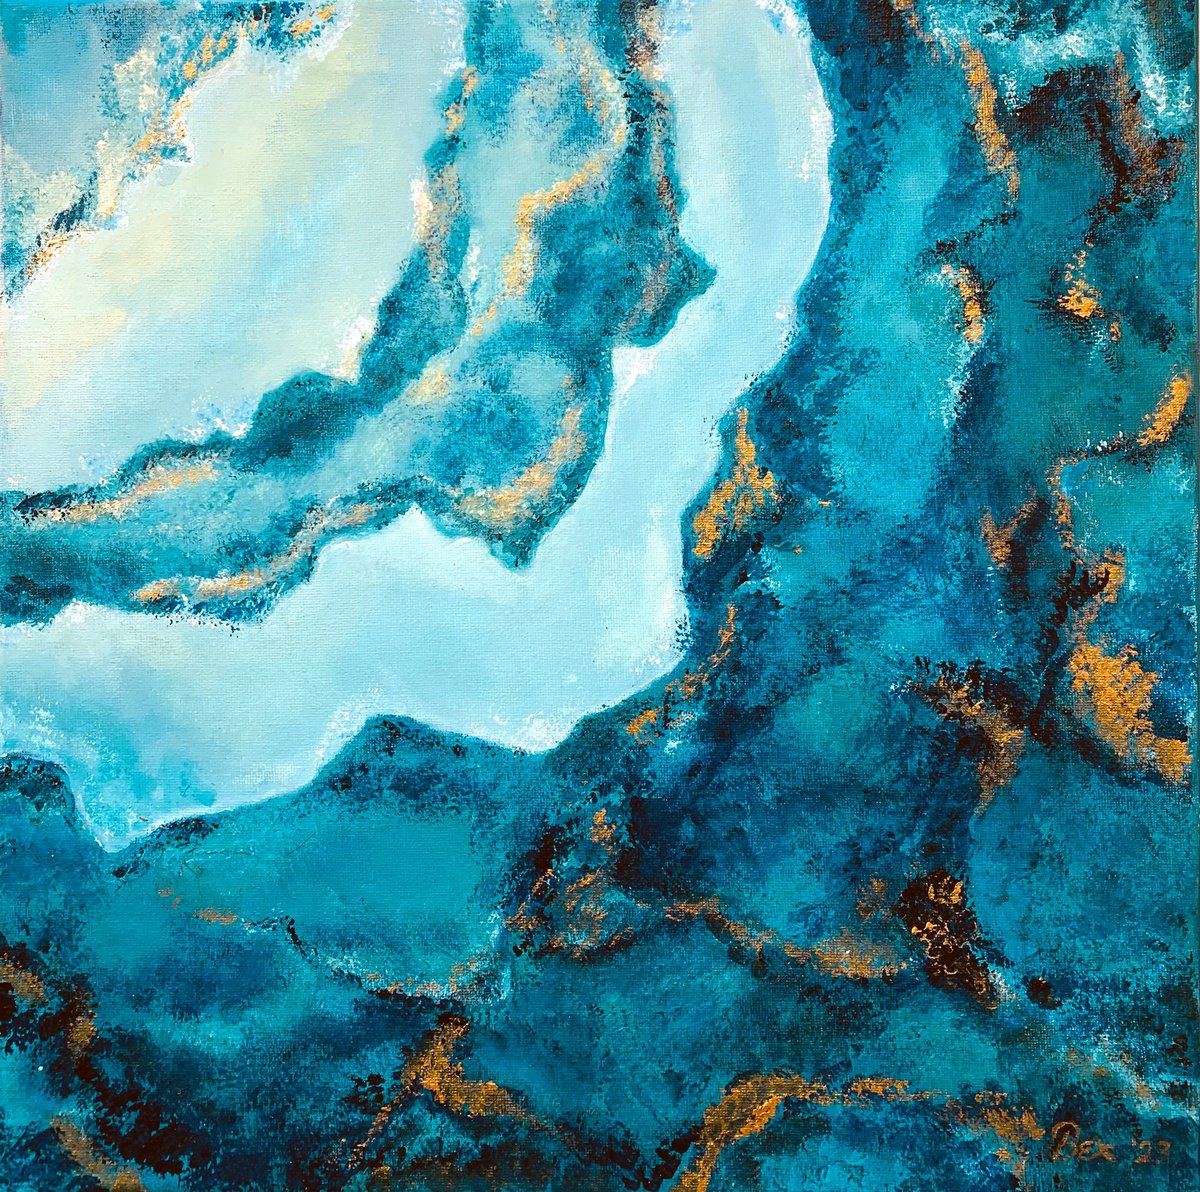 Vrzea Azul by Bihari Beatrix Renta (Bexby Bex)